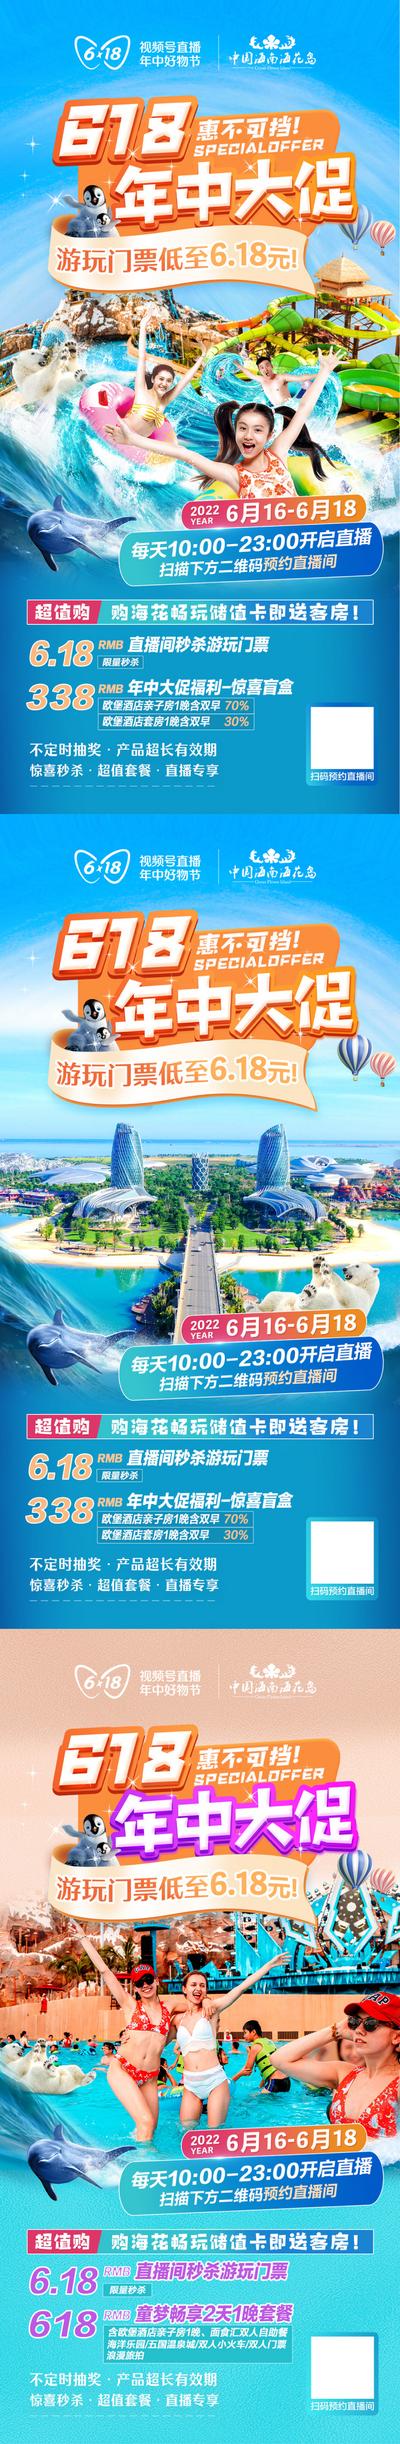 【南门网】海报 旅游 618 年中大促 人物 促销 海岛 狂欢 直播 水上乐园 系列